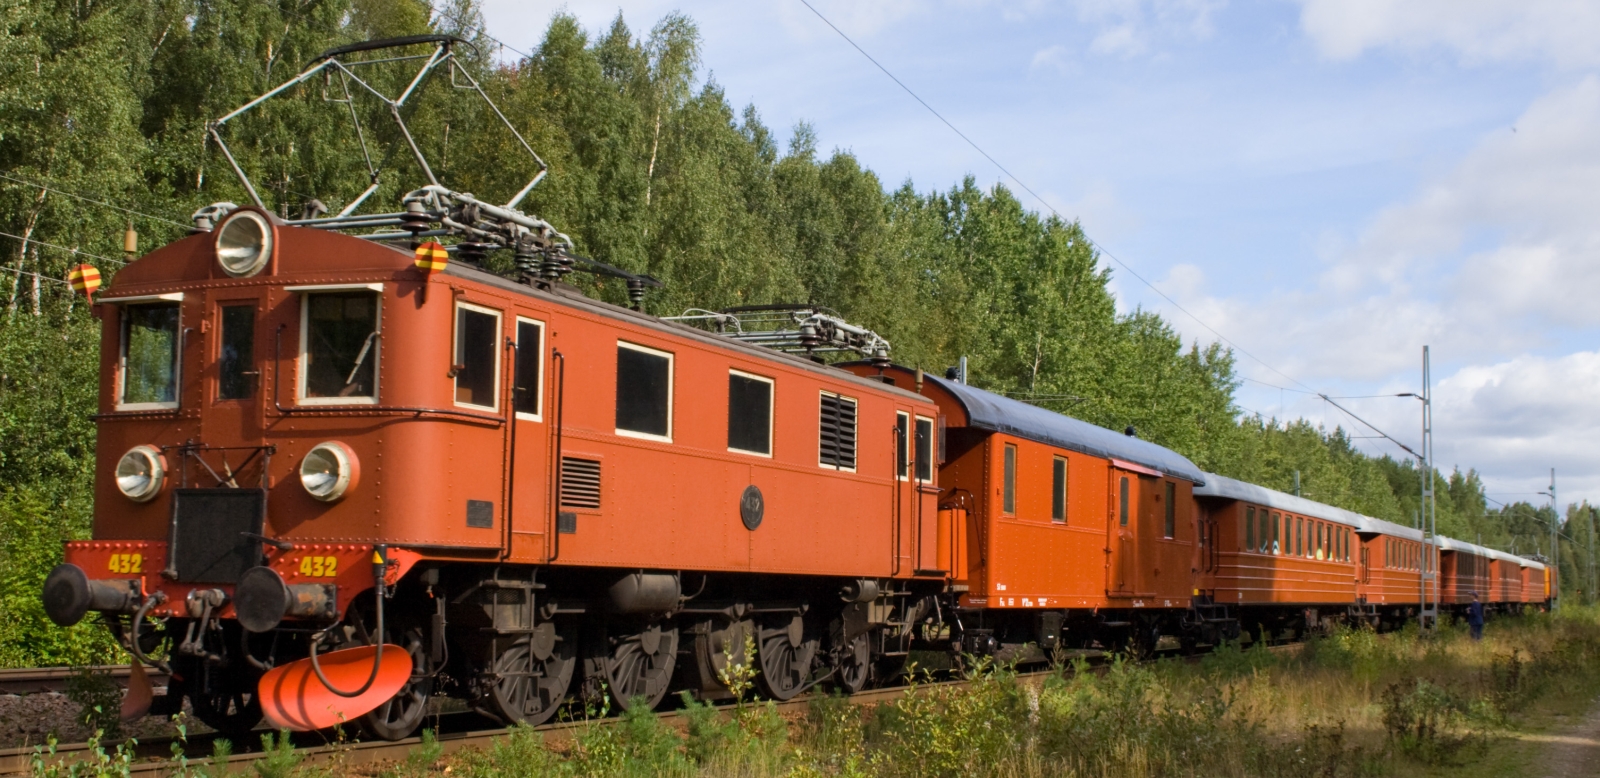 D No. 432 in September 2006 at Gävle